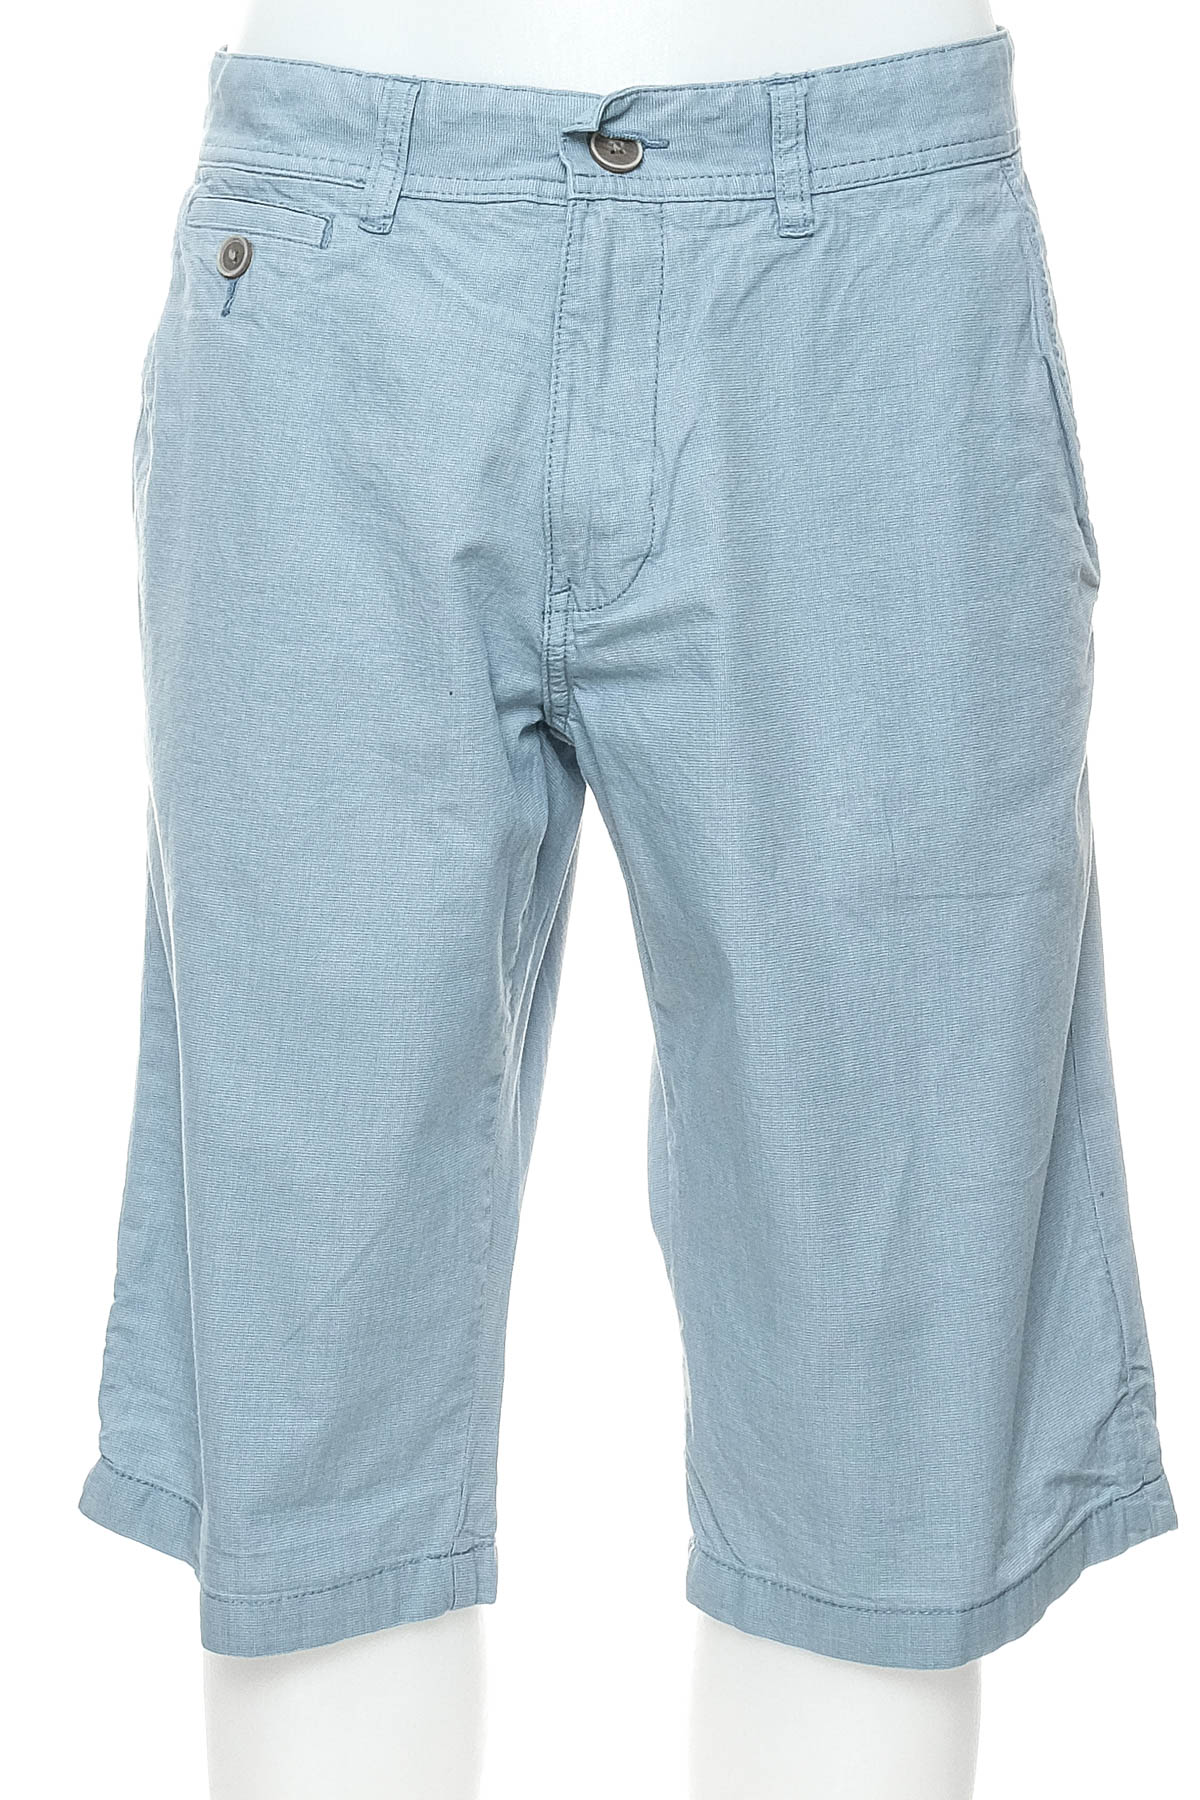 Pantaloni scurți bărbați - ESPRIT - 0